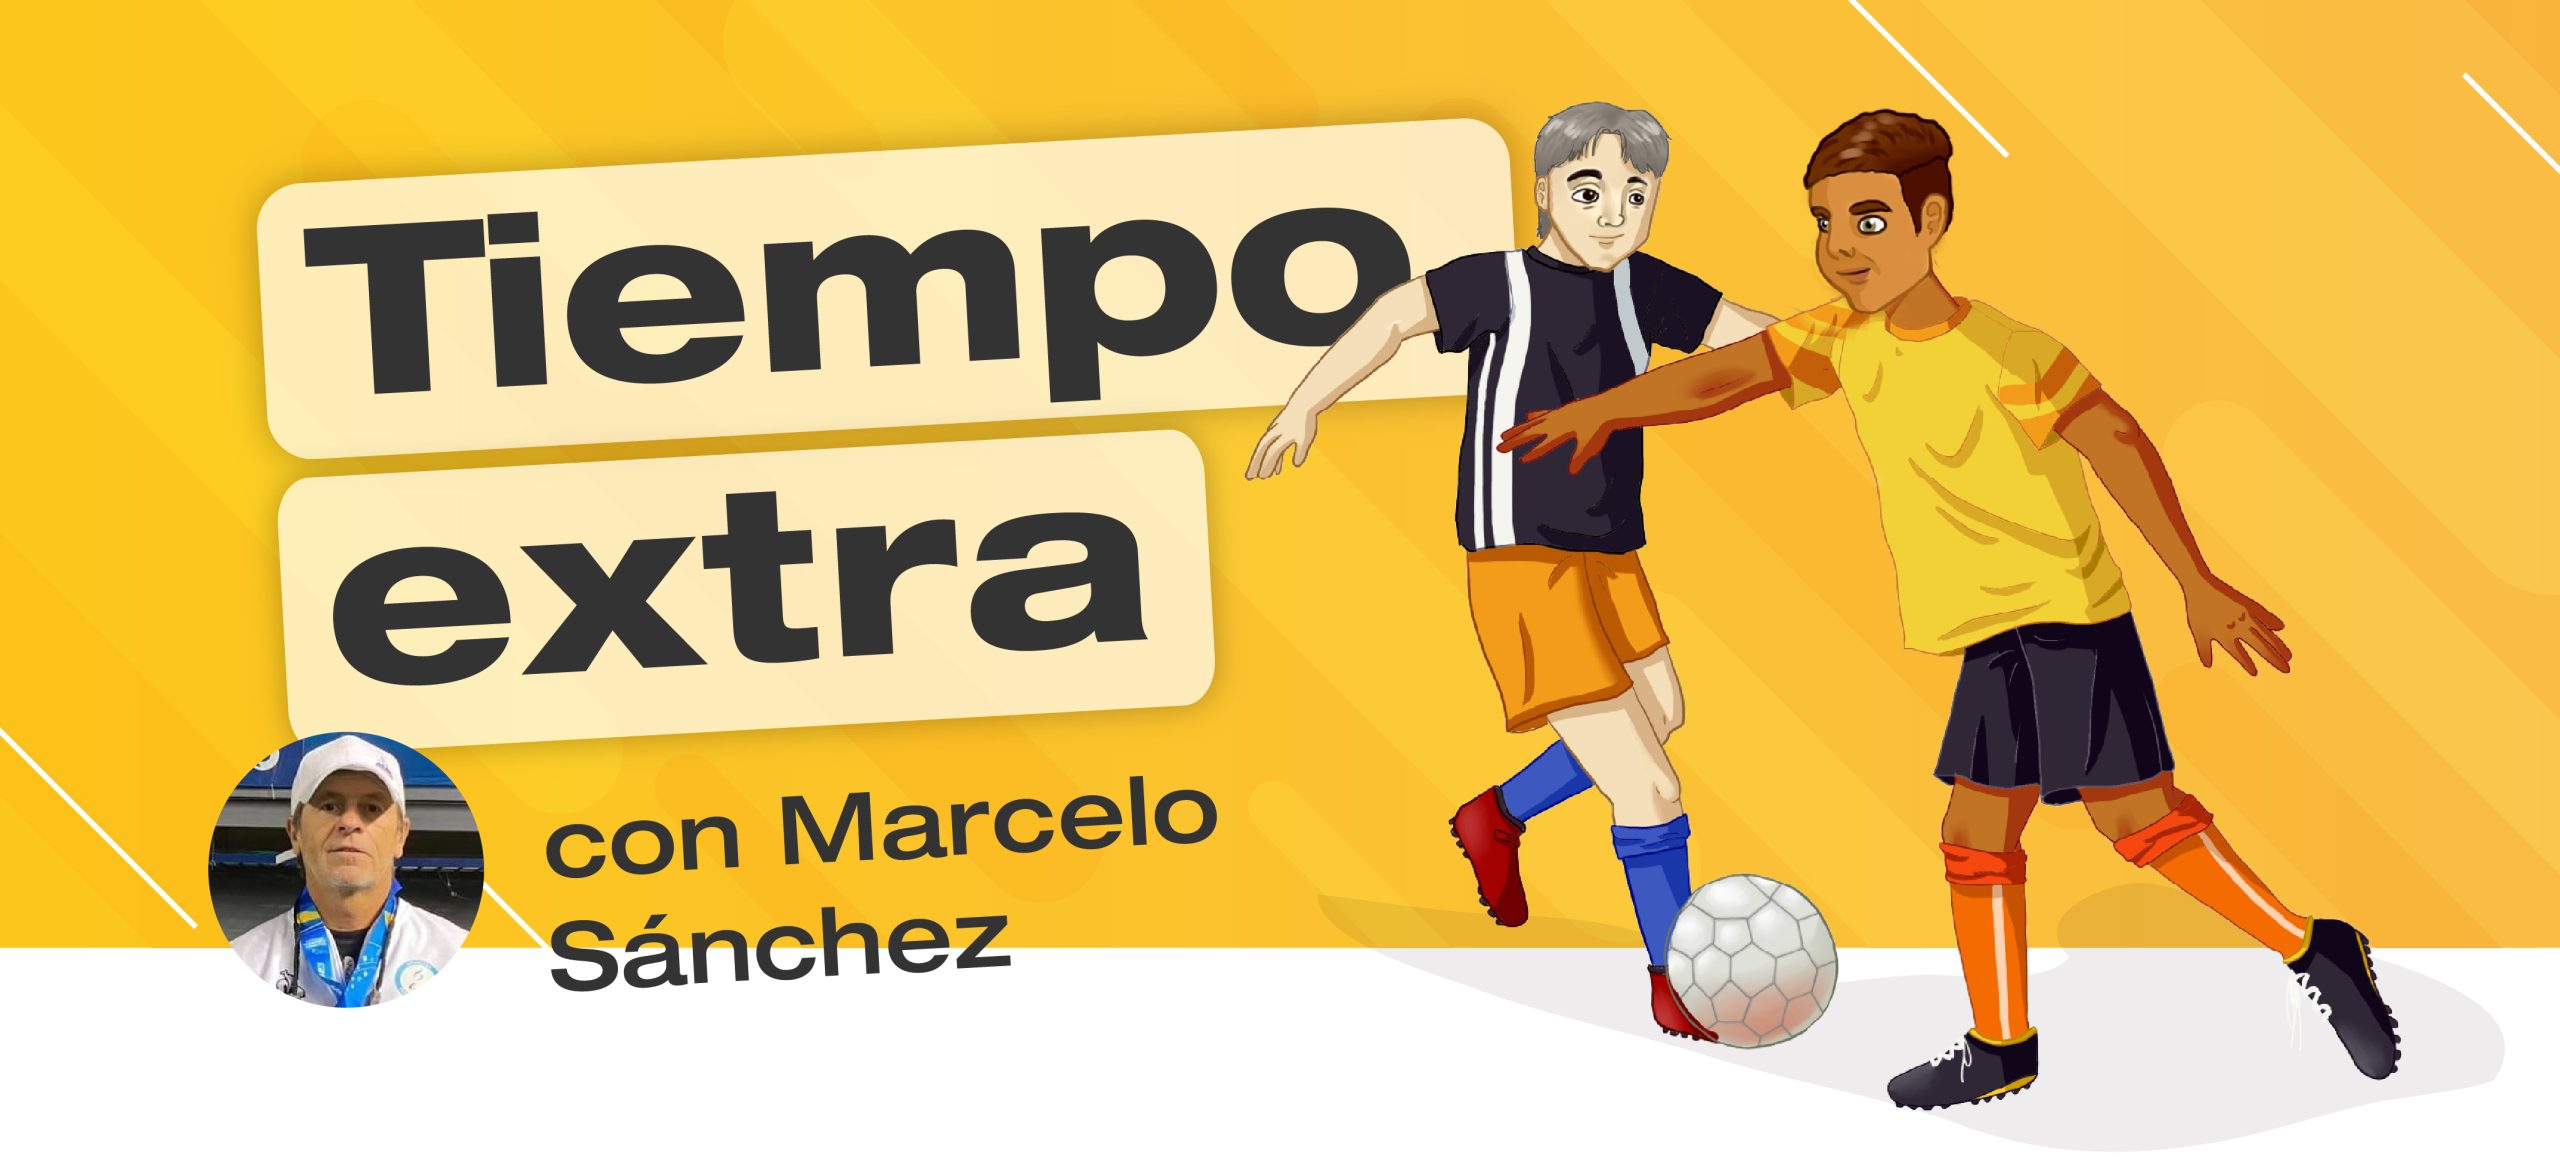 Banner con el título: Tiempo Extra. Debajo, una foto en miniatura del invitado: Marcelo Sánchez. Acompaña una ilustración de dos personas jugando fútbol PC.